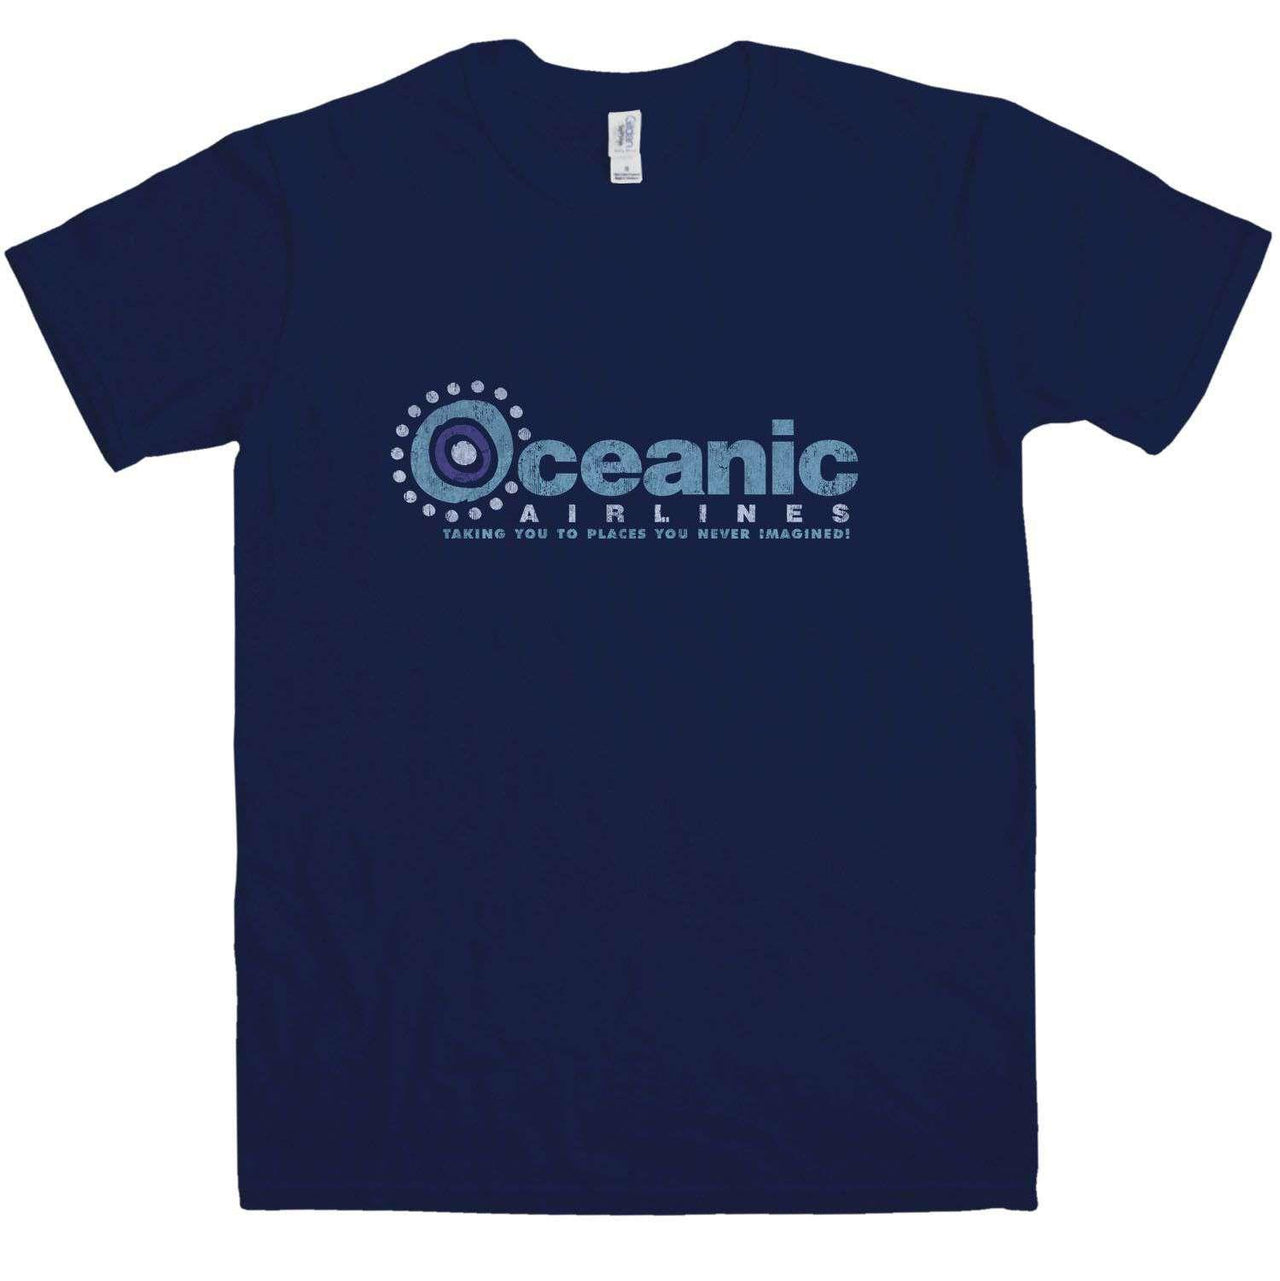 Oceanic Airlines T-Shirt For Men 8Ball